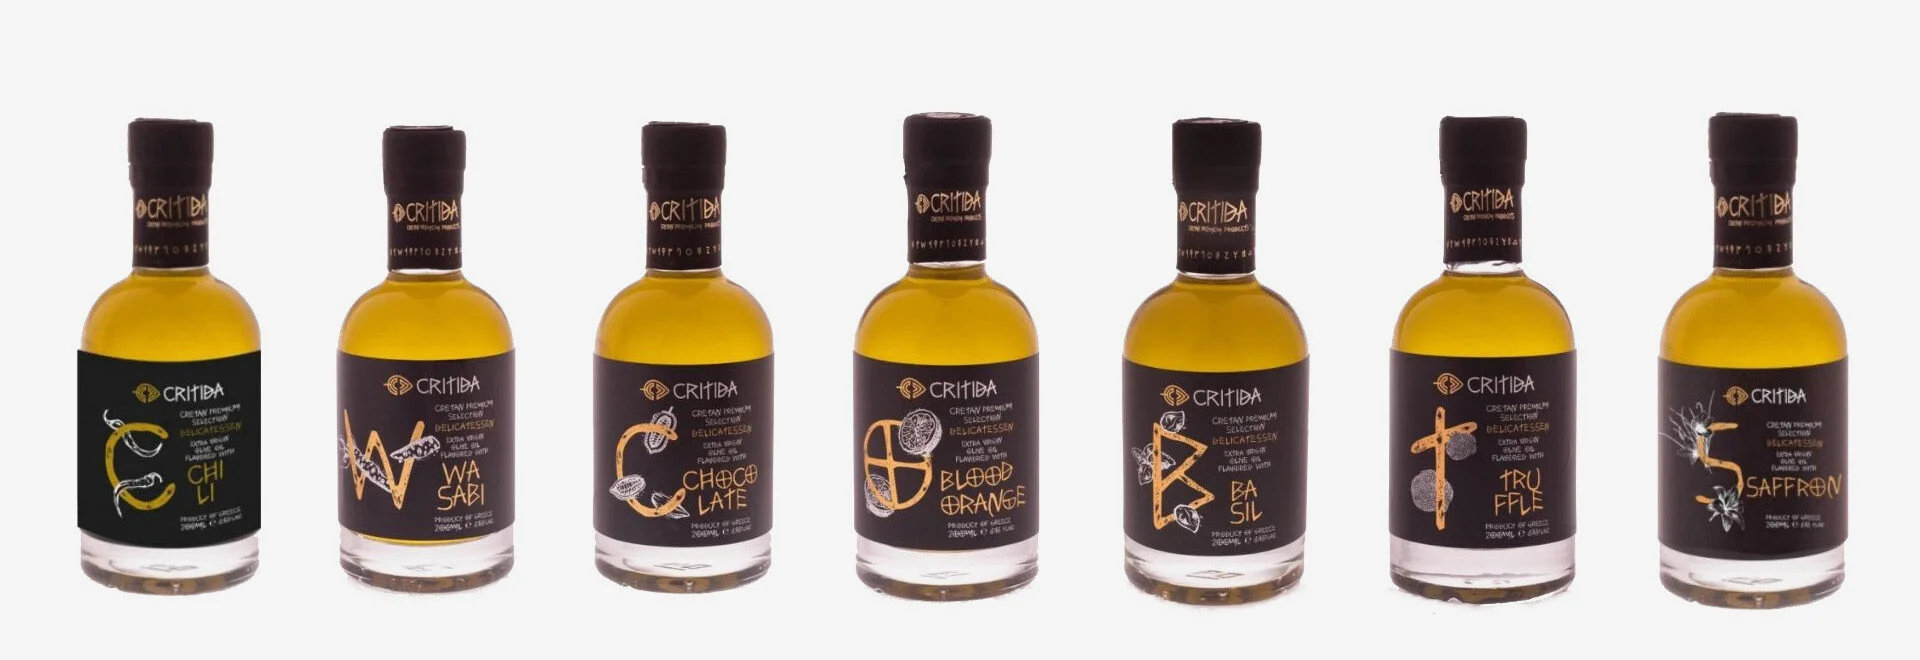 I nostri prodotti premium aromatizzati all'olio extra vergine di oliva (EVOO) dall'isola di Creta, in Grecia